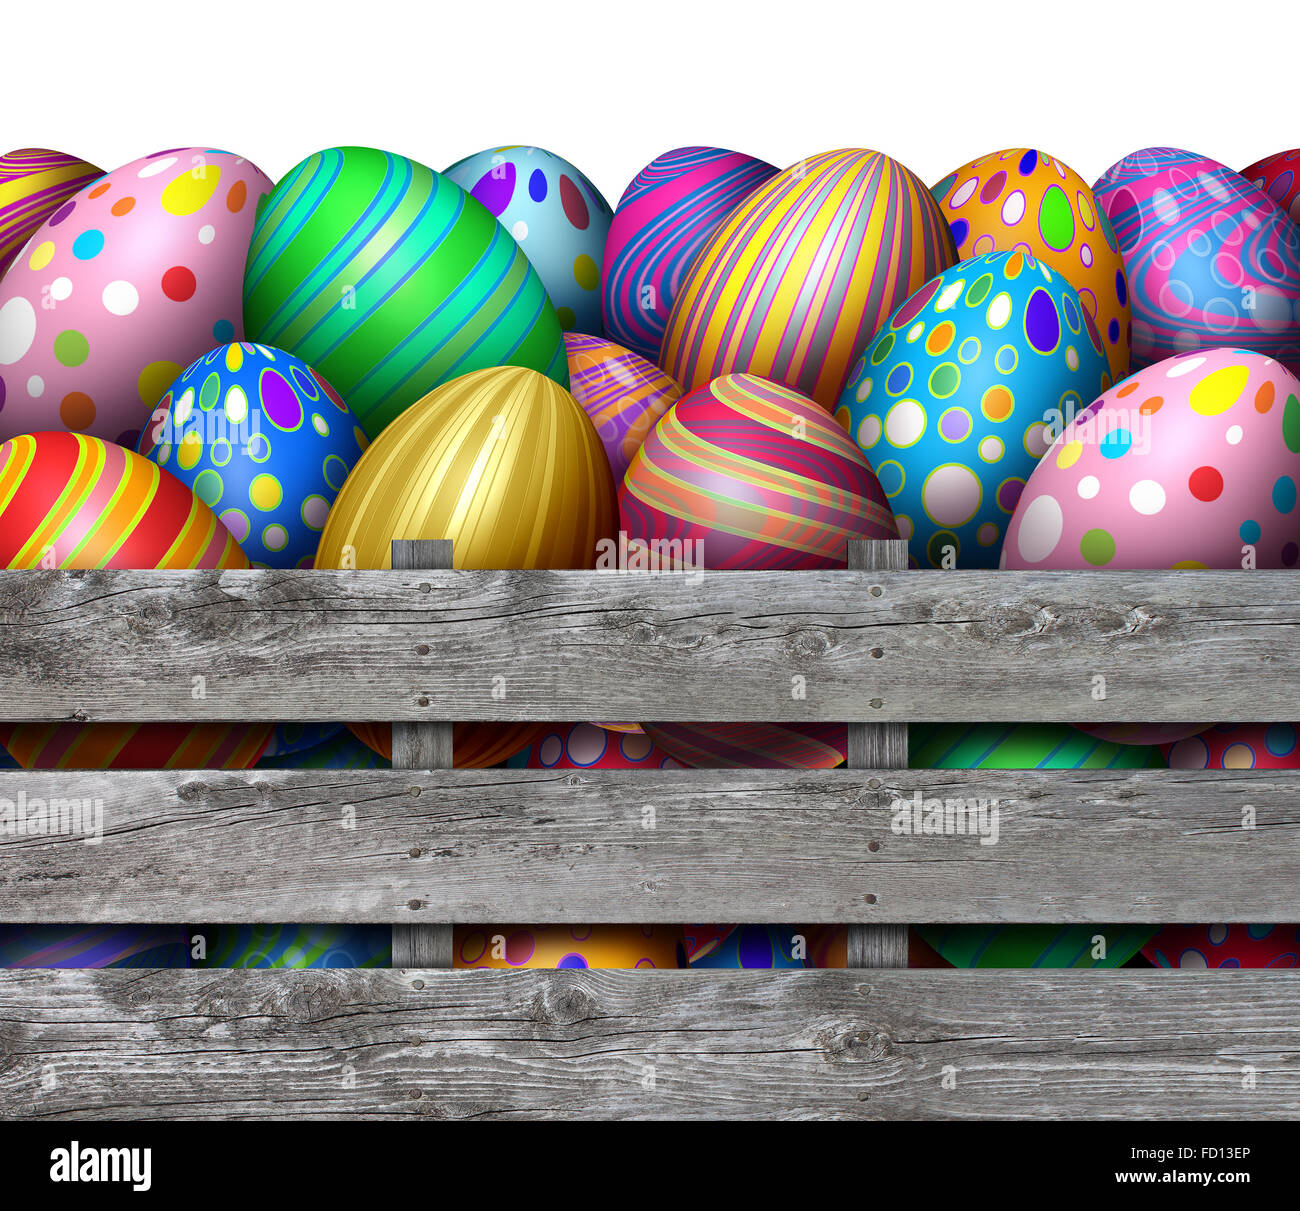 Búsqueda del huevo de pascua cosecha como un grupo de huevos decorados en una vieja caja de madera desgastada caja como un símbolo de primavera festiva para la caza de vacaciones regalos oval pintado colorido. Foto de stock